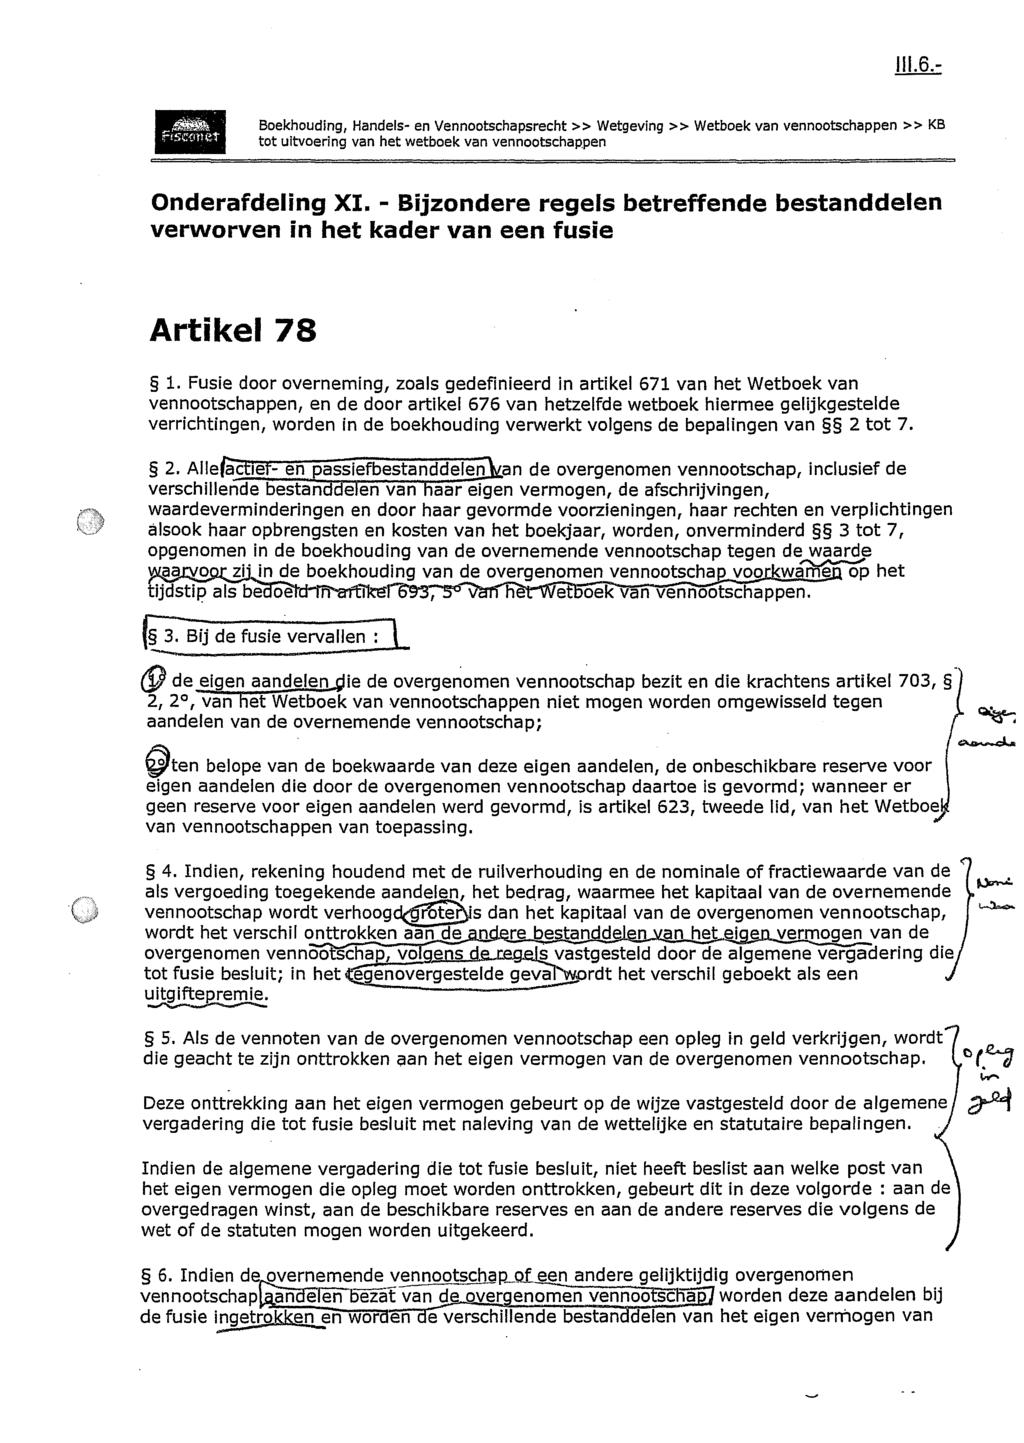 Boekhouding, Handels- en Vennootschapsrecht» Wetgeving» Wetboek van vennootschappen» KB tot uitvoering van het wetboek van vennootschappen Onderafdeling XI.